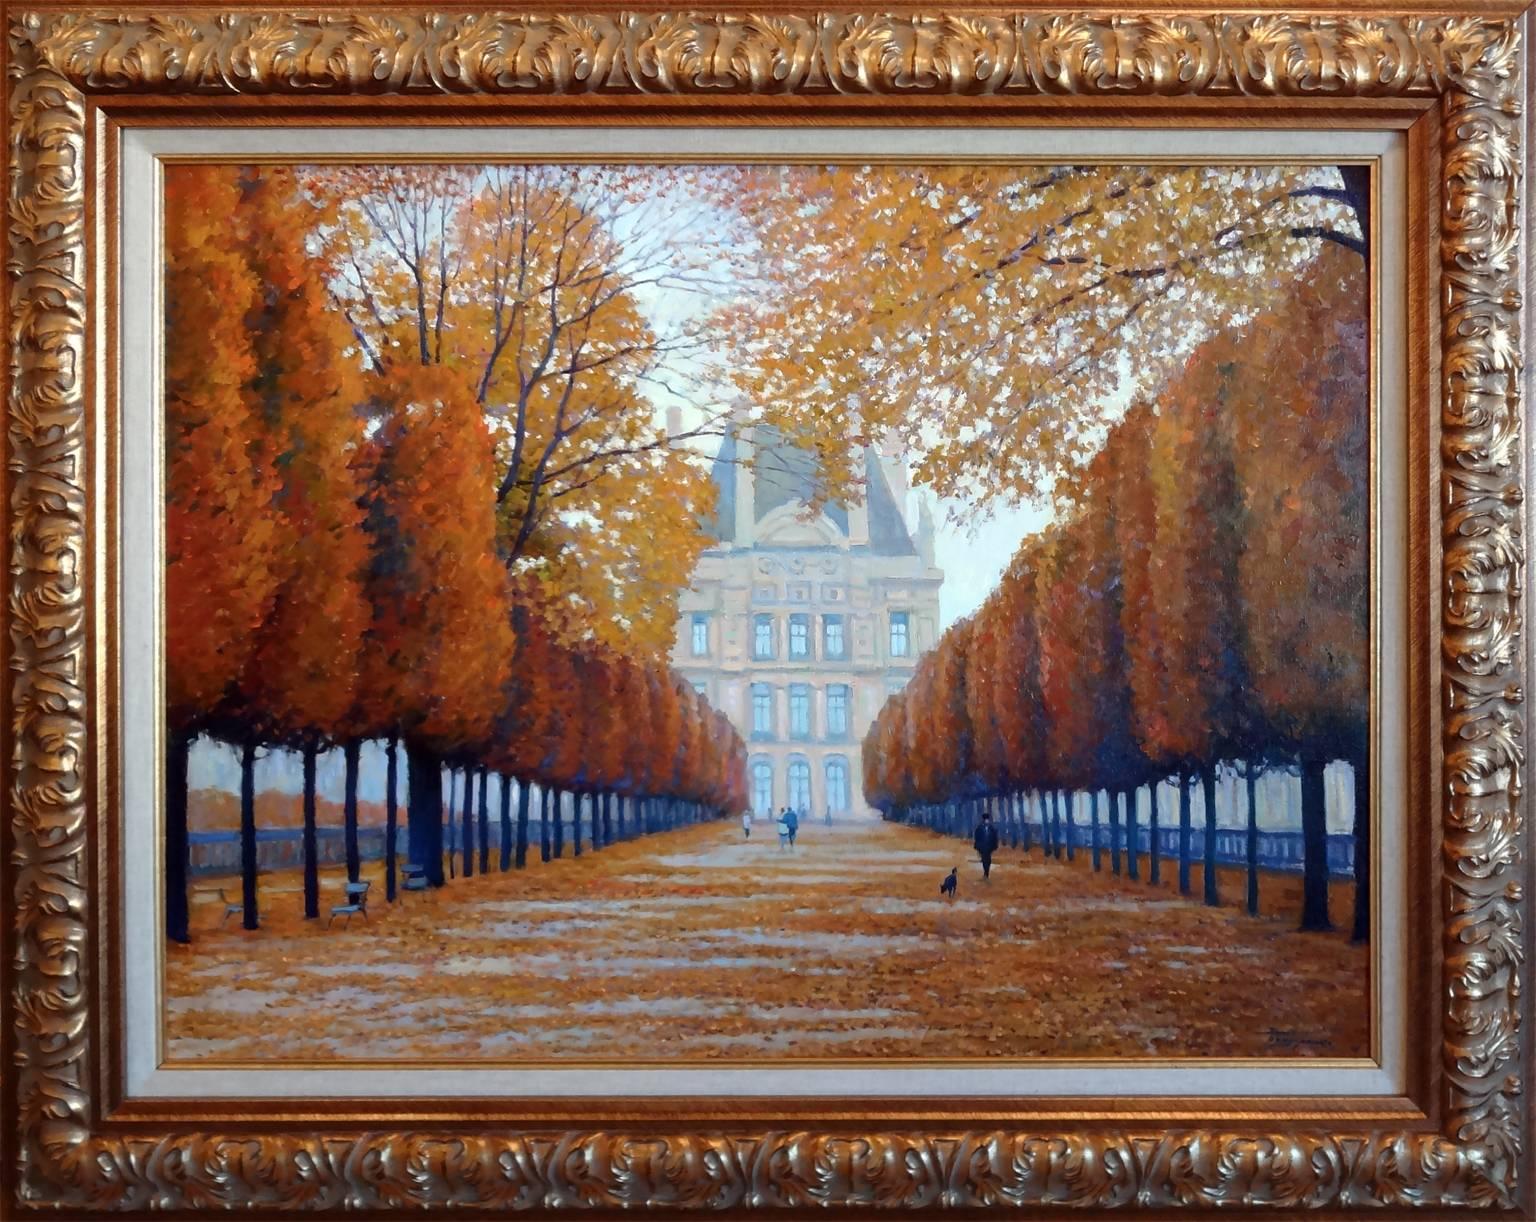 Jardin des Tuileries, Paris - Painting by Yuri Bondarenko